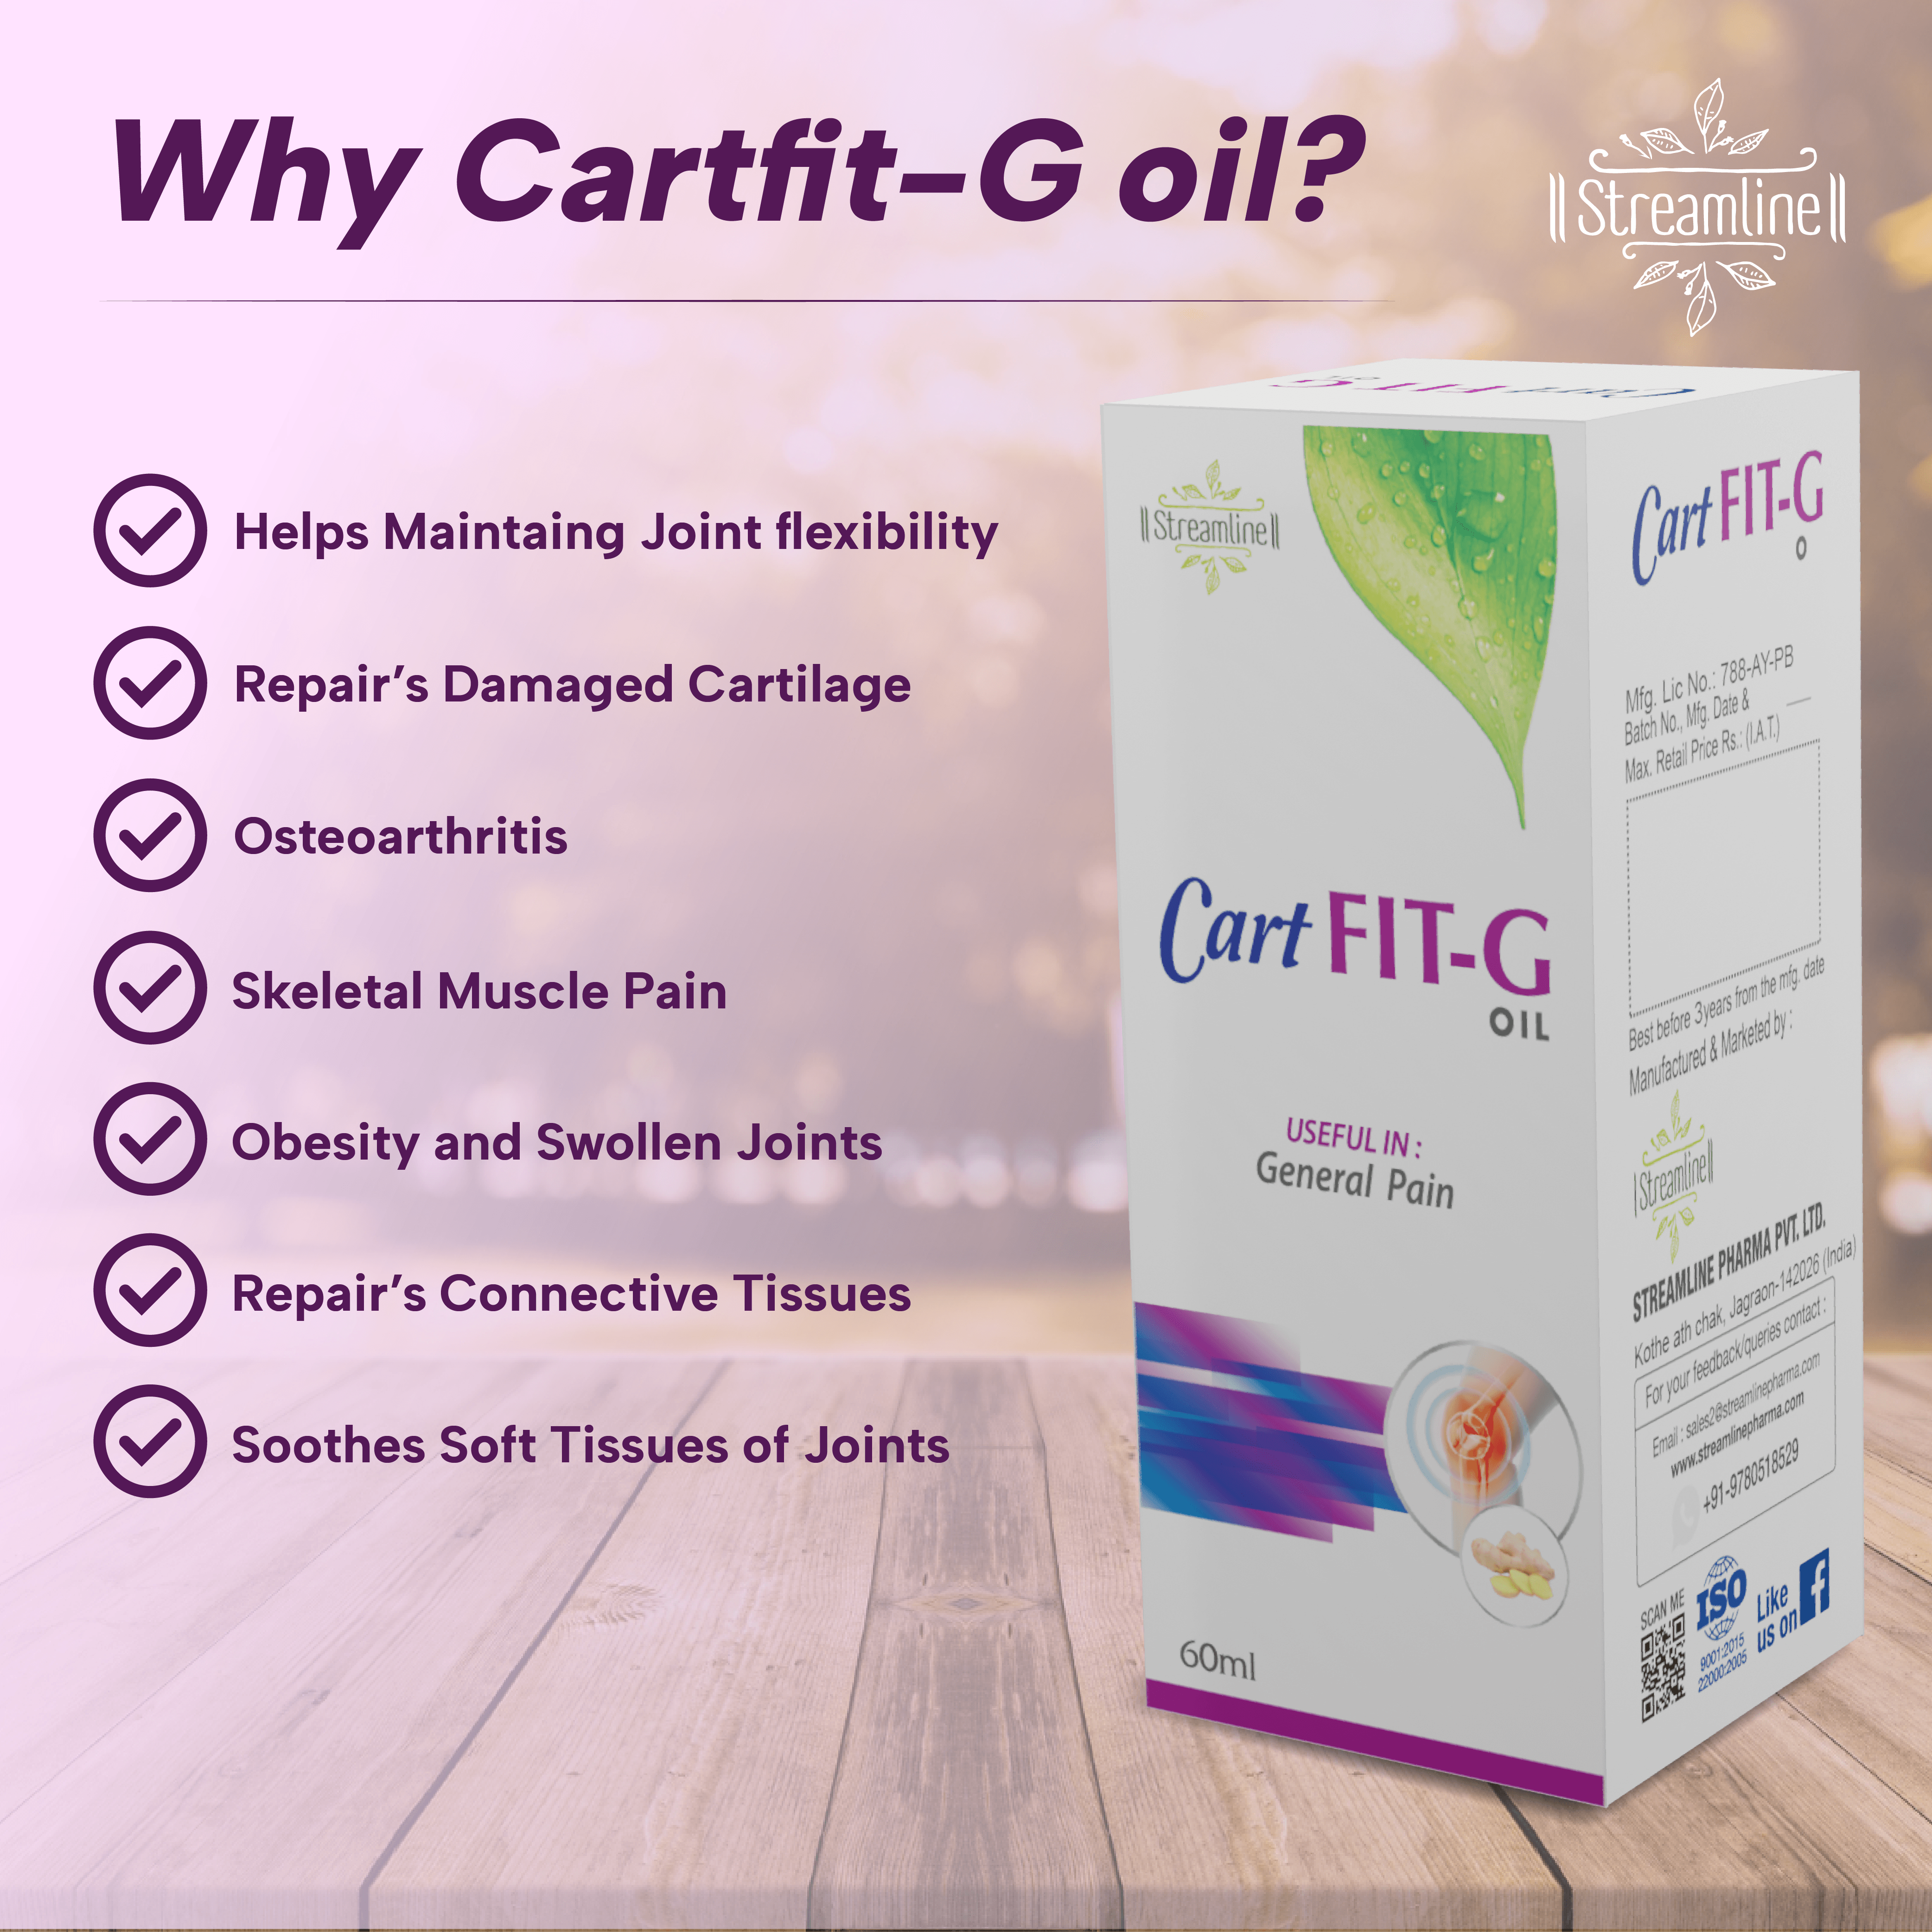 CartFIT-G OIL